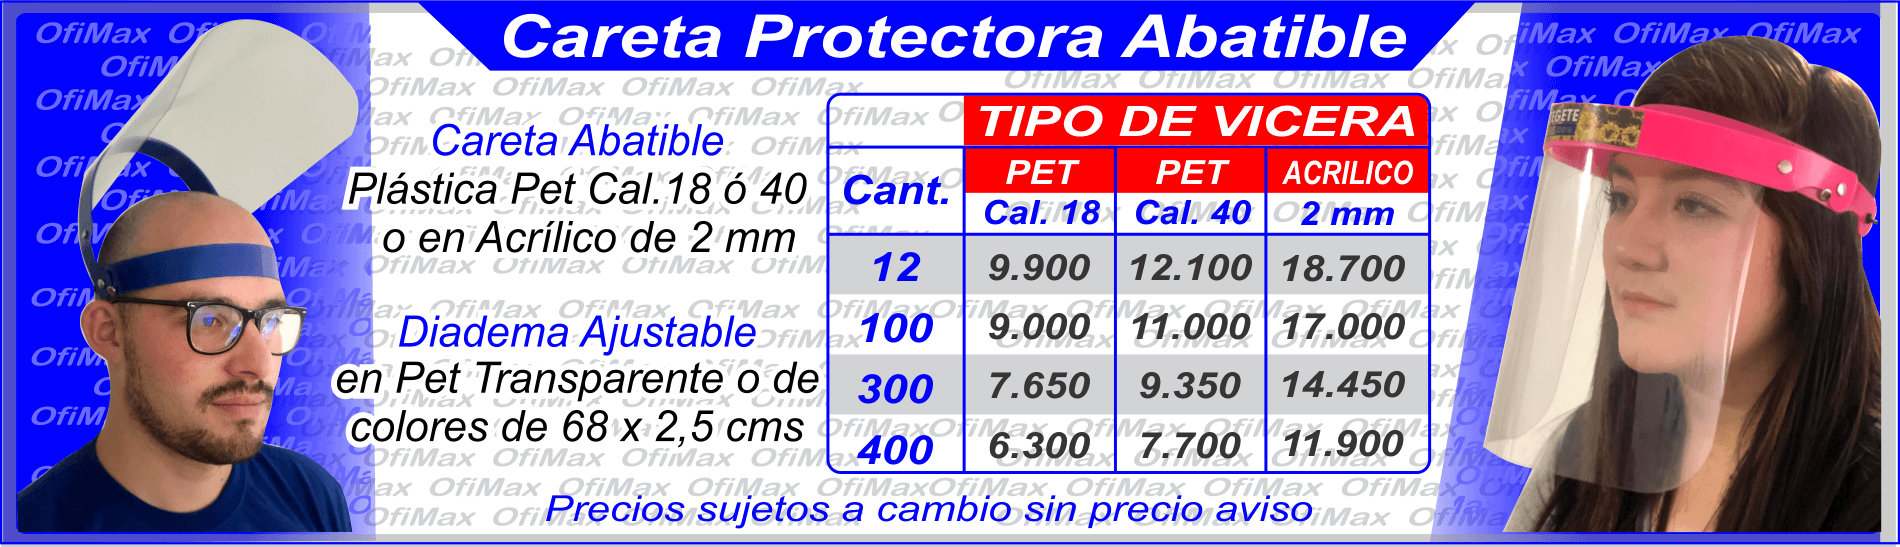 precios de caretas protectoras contra fluidos, colombia